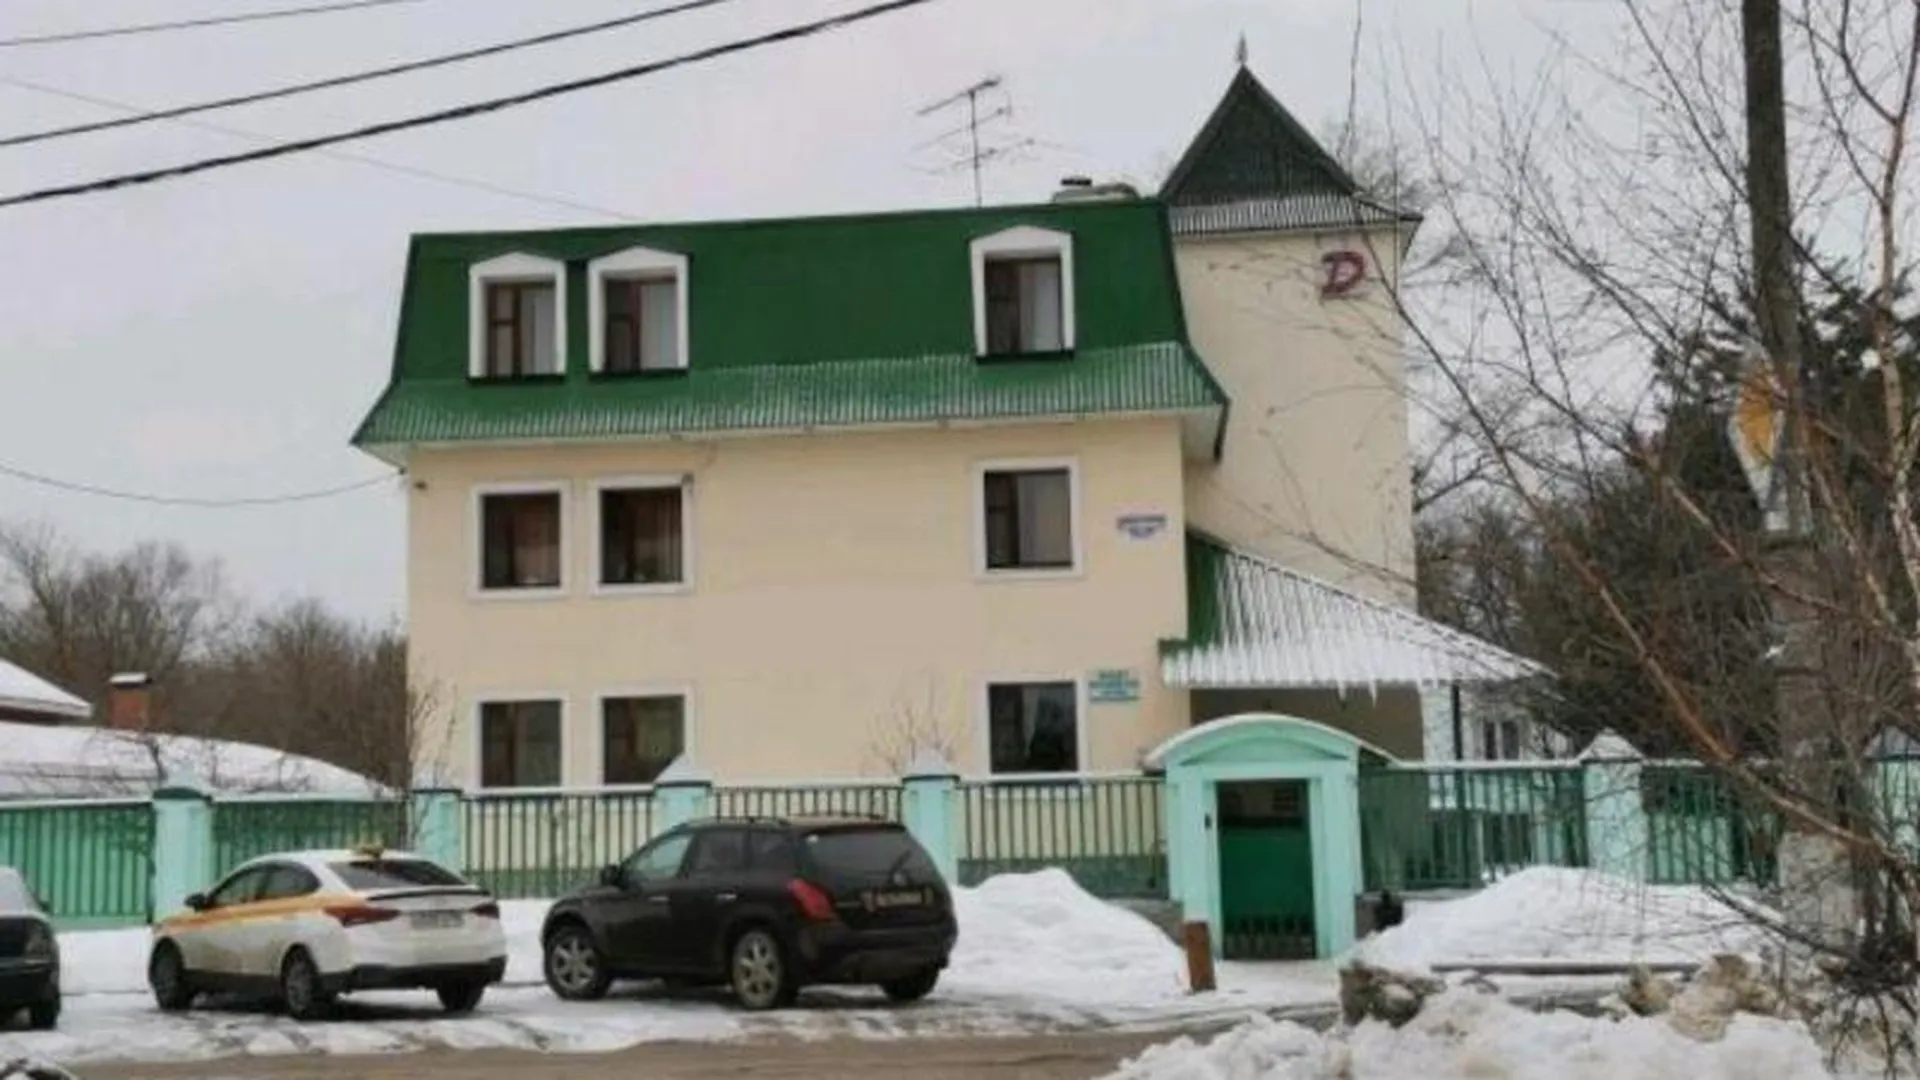 Незаконную гостиницу обнаружили в подмосковном Орехово-Зуево